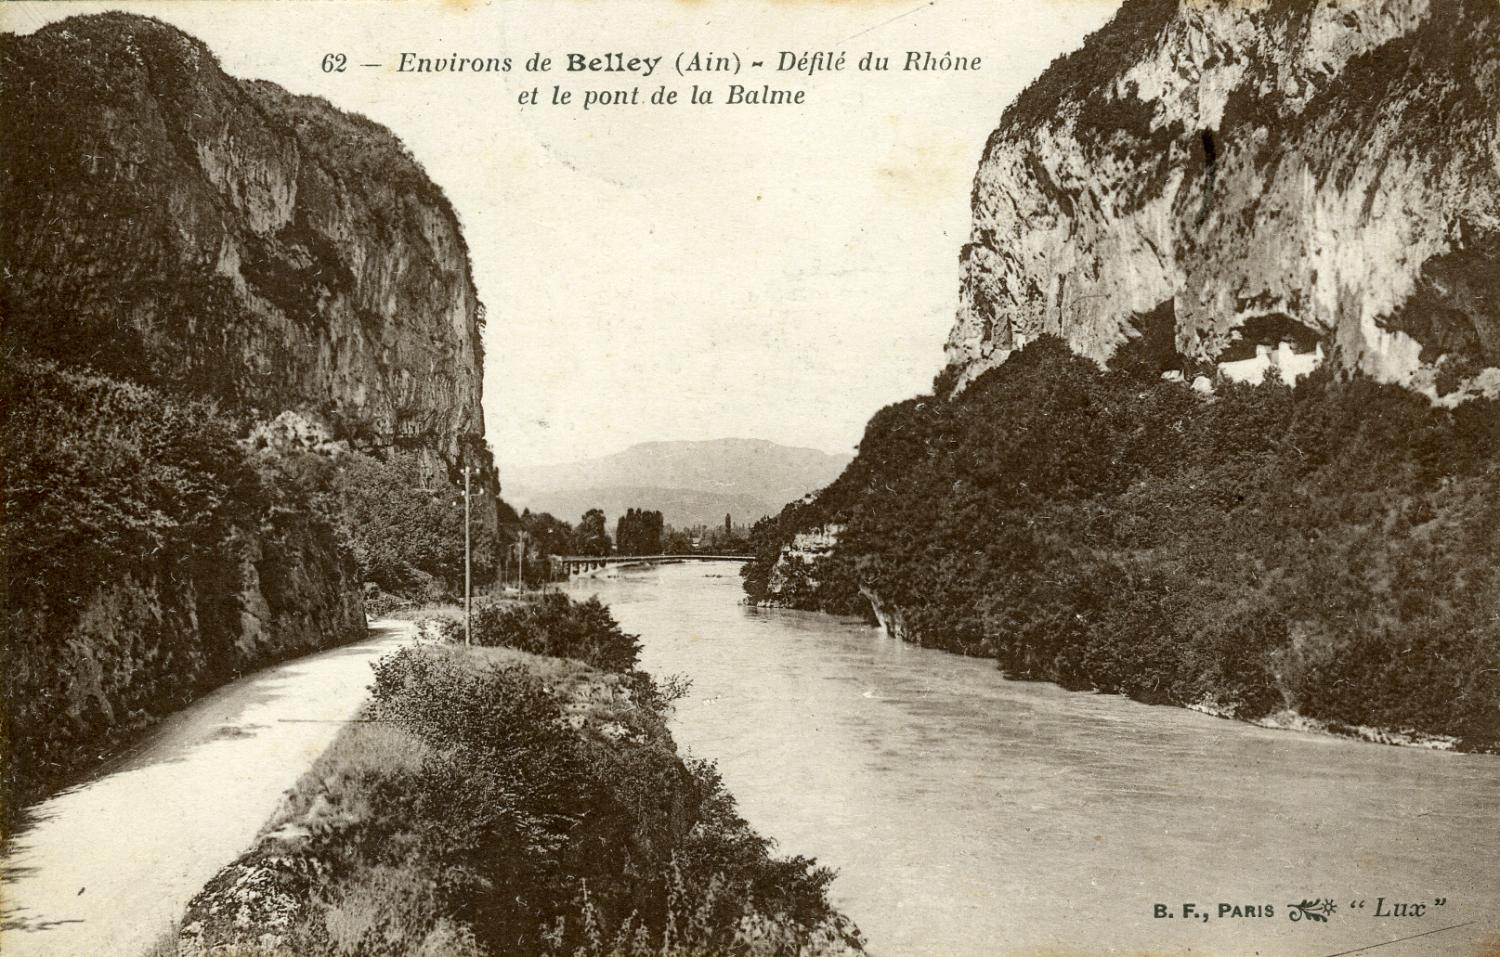 Environs de Belley (Ain) - Défilé du Rhône et le pont de la Balme.